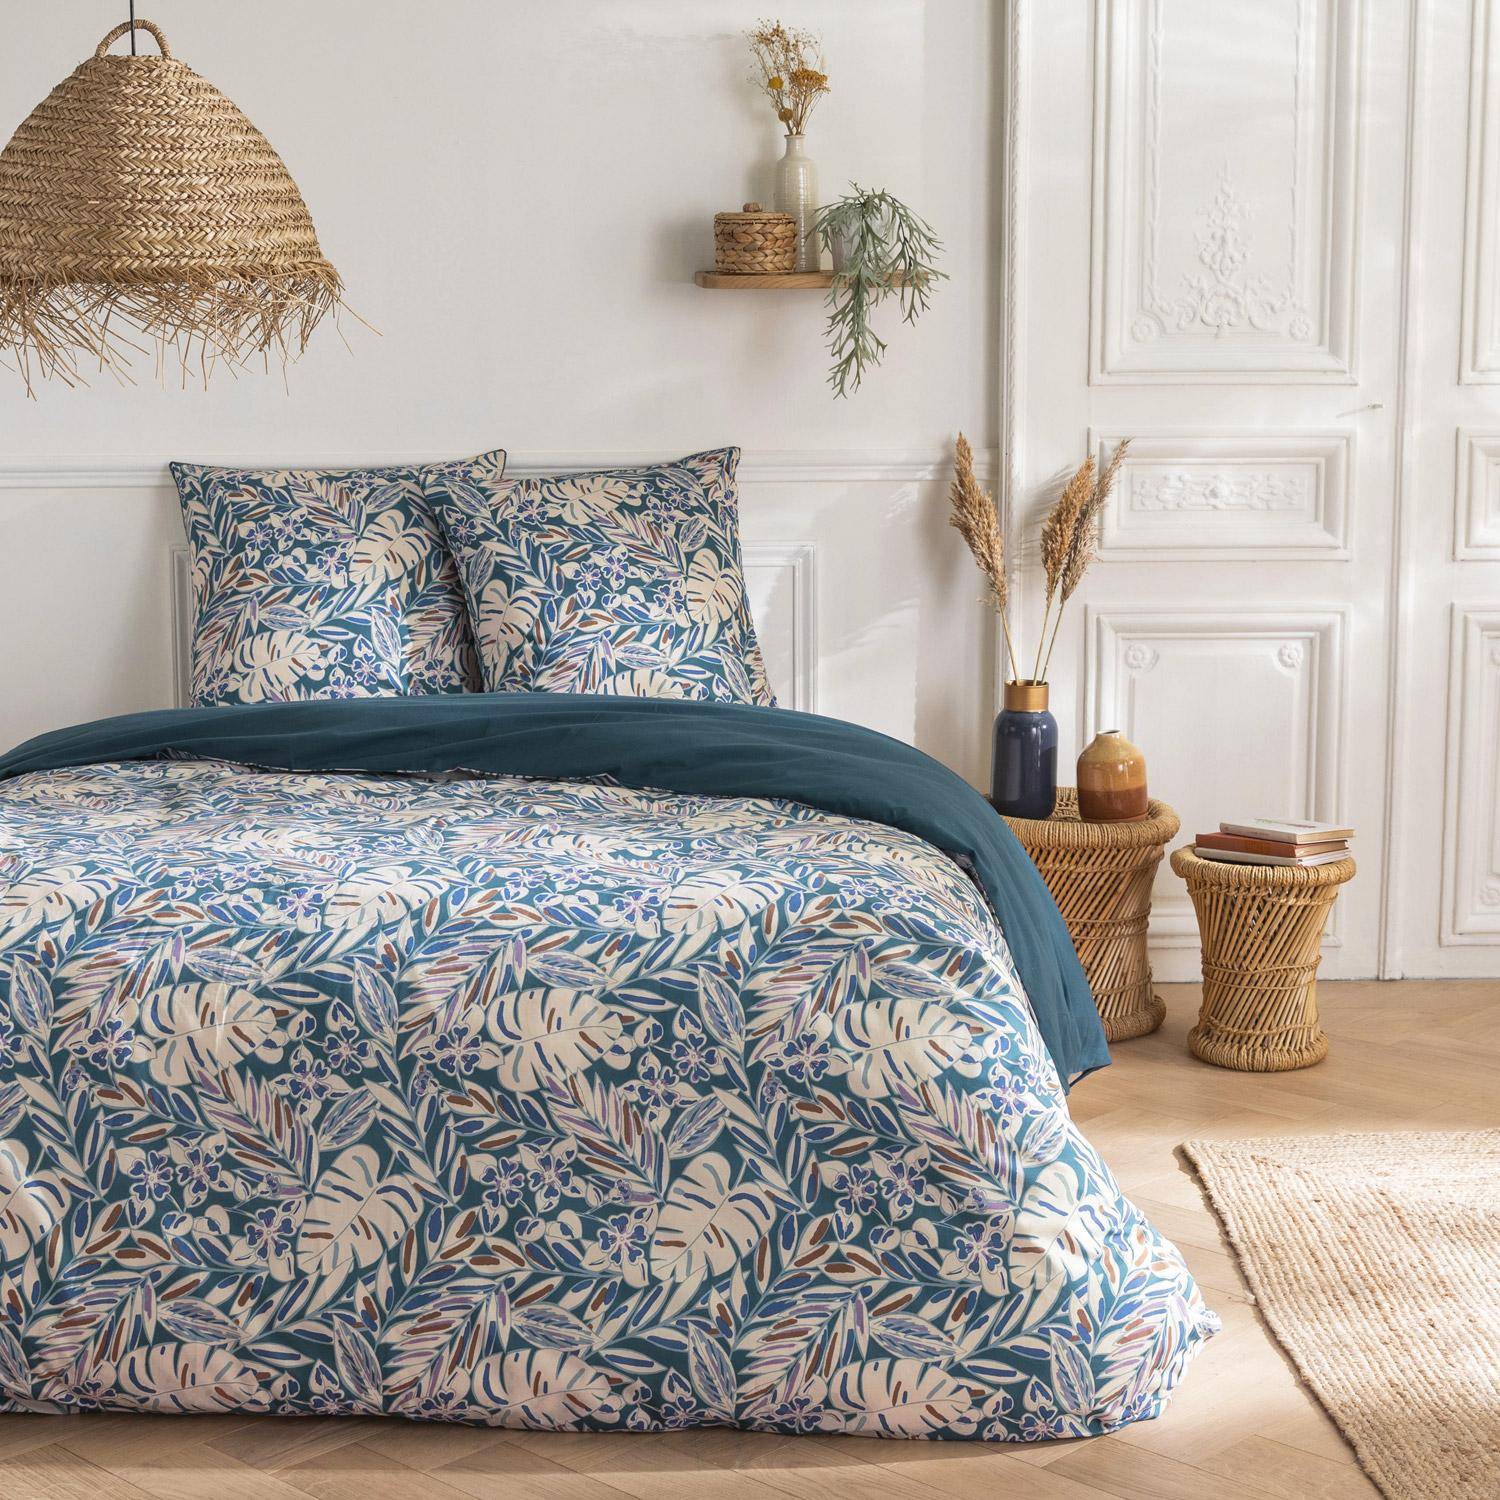 Parure de lit réversible 240x220cm imprimé feuillage bleu et blanc en coton  Photo1